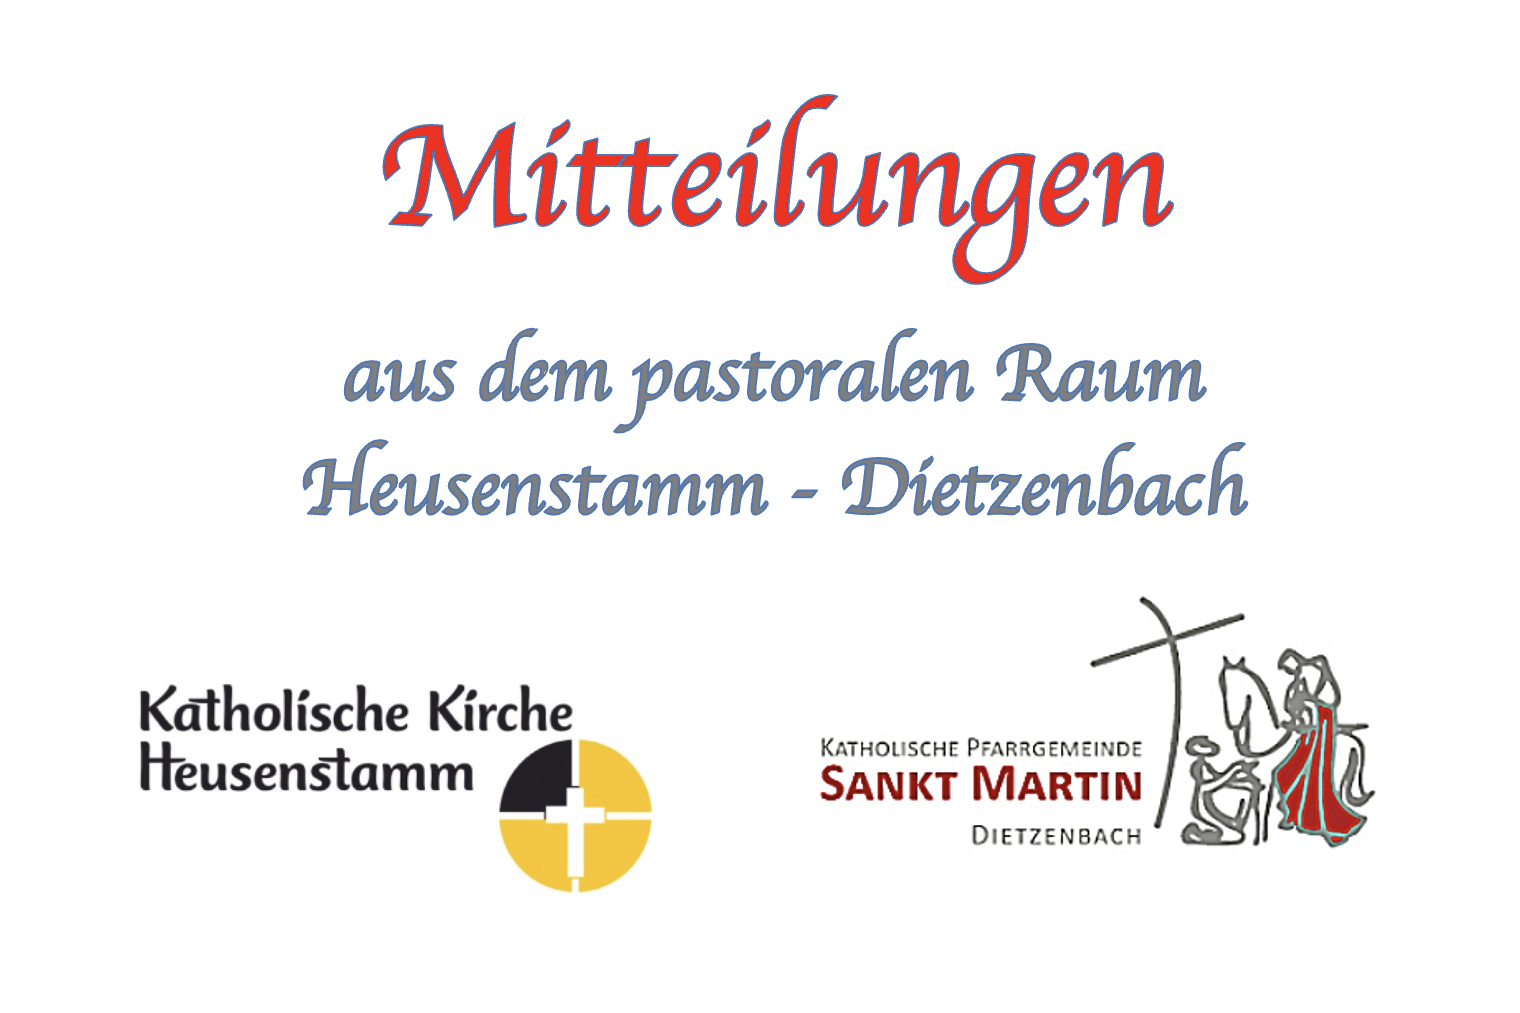 Mitteilungen aus dem pastoralen Raum (c) Pastoralraum Heusenstamm-Dietzenbach